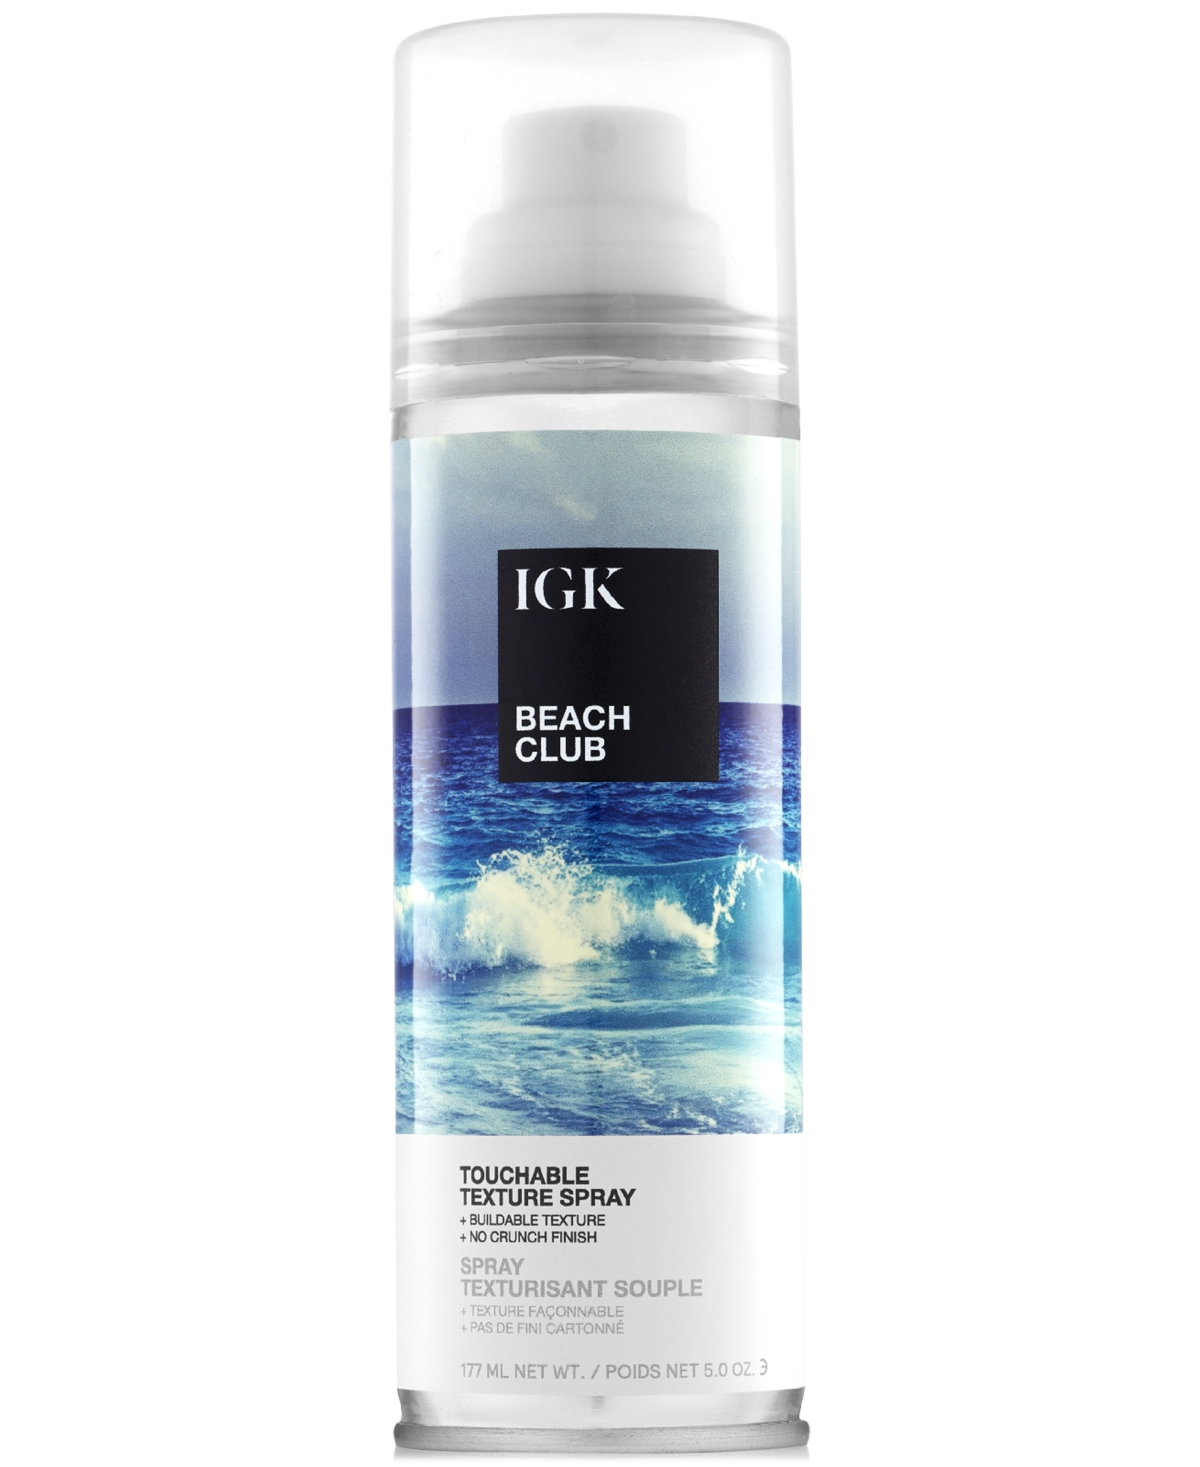 Beach Club Touchable Texture Spray